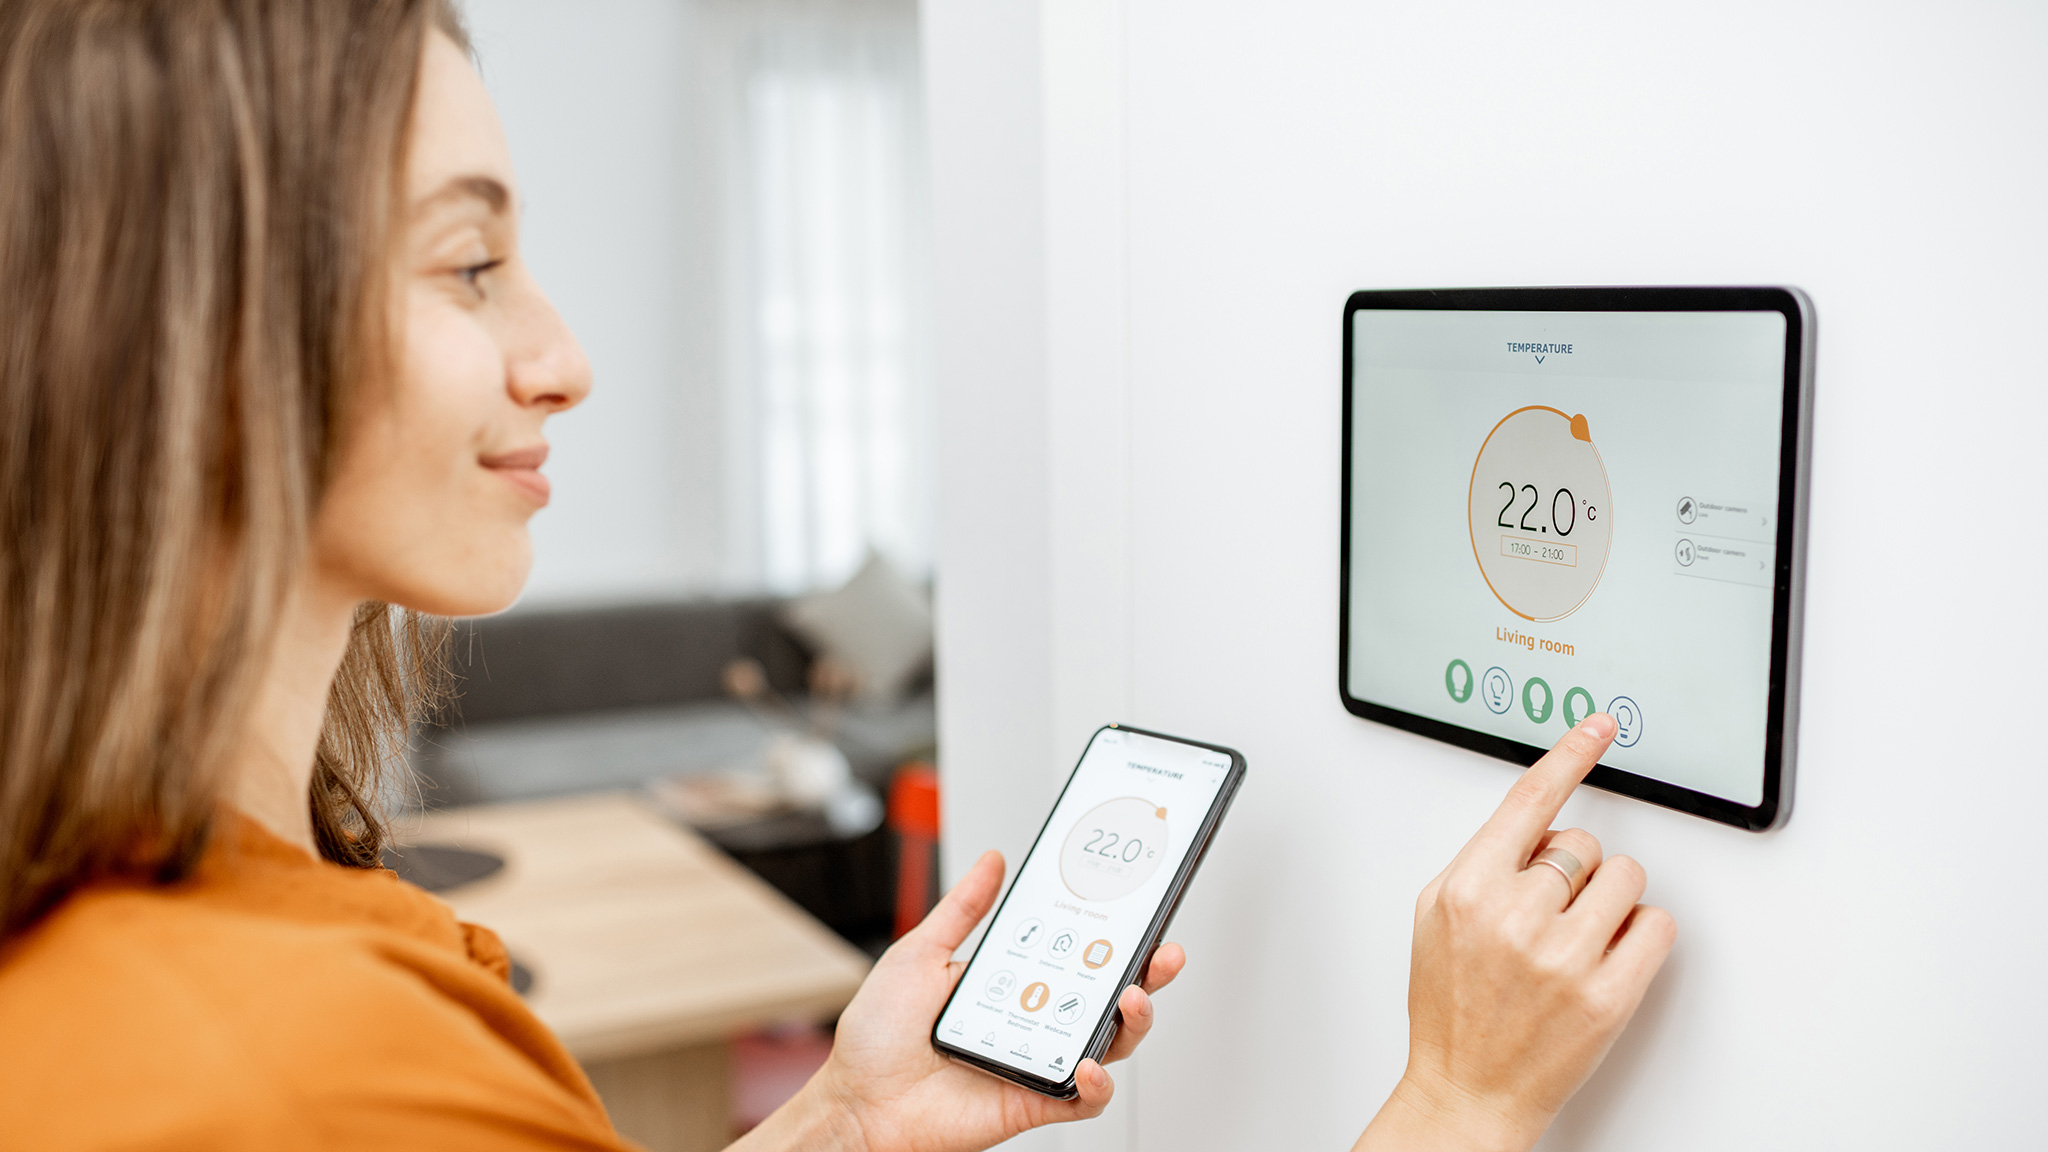 Frau stellt Temperatur an Smart Home Panel ein